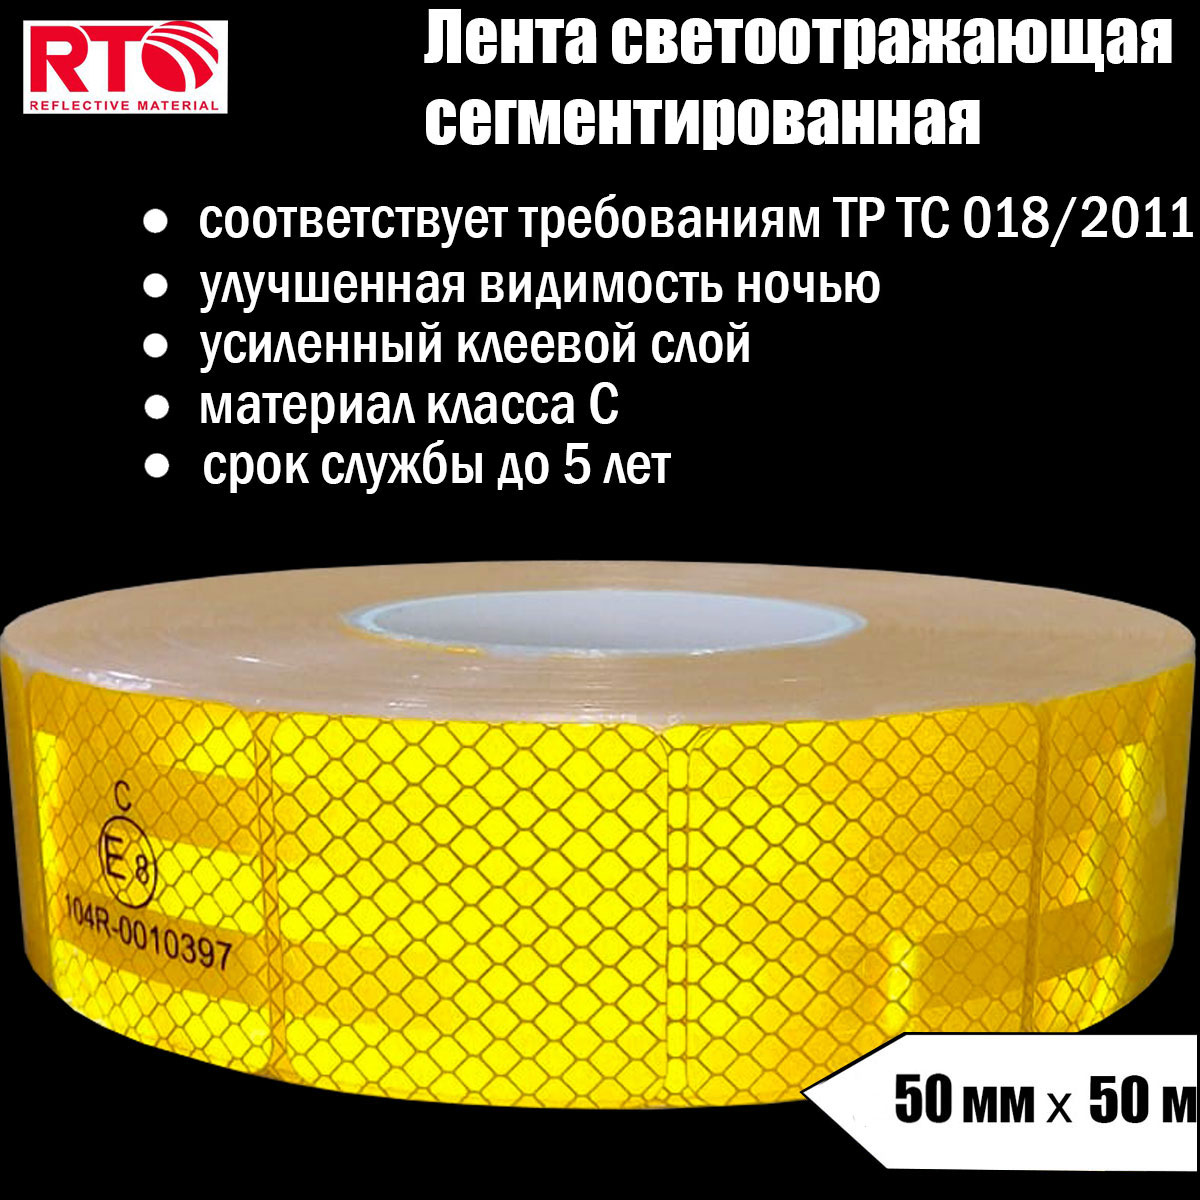 Лента светоотражающая сегментированная RTLITE RT-V104 для контурной маркировки, 50мм х 50м